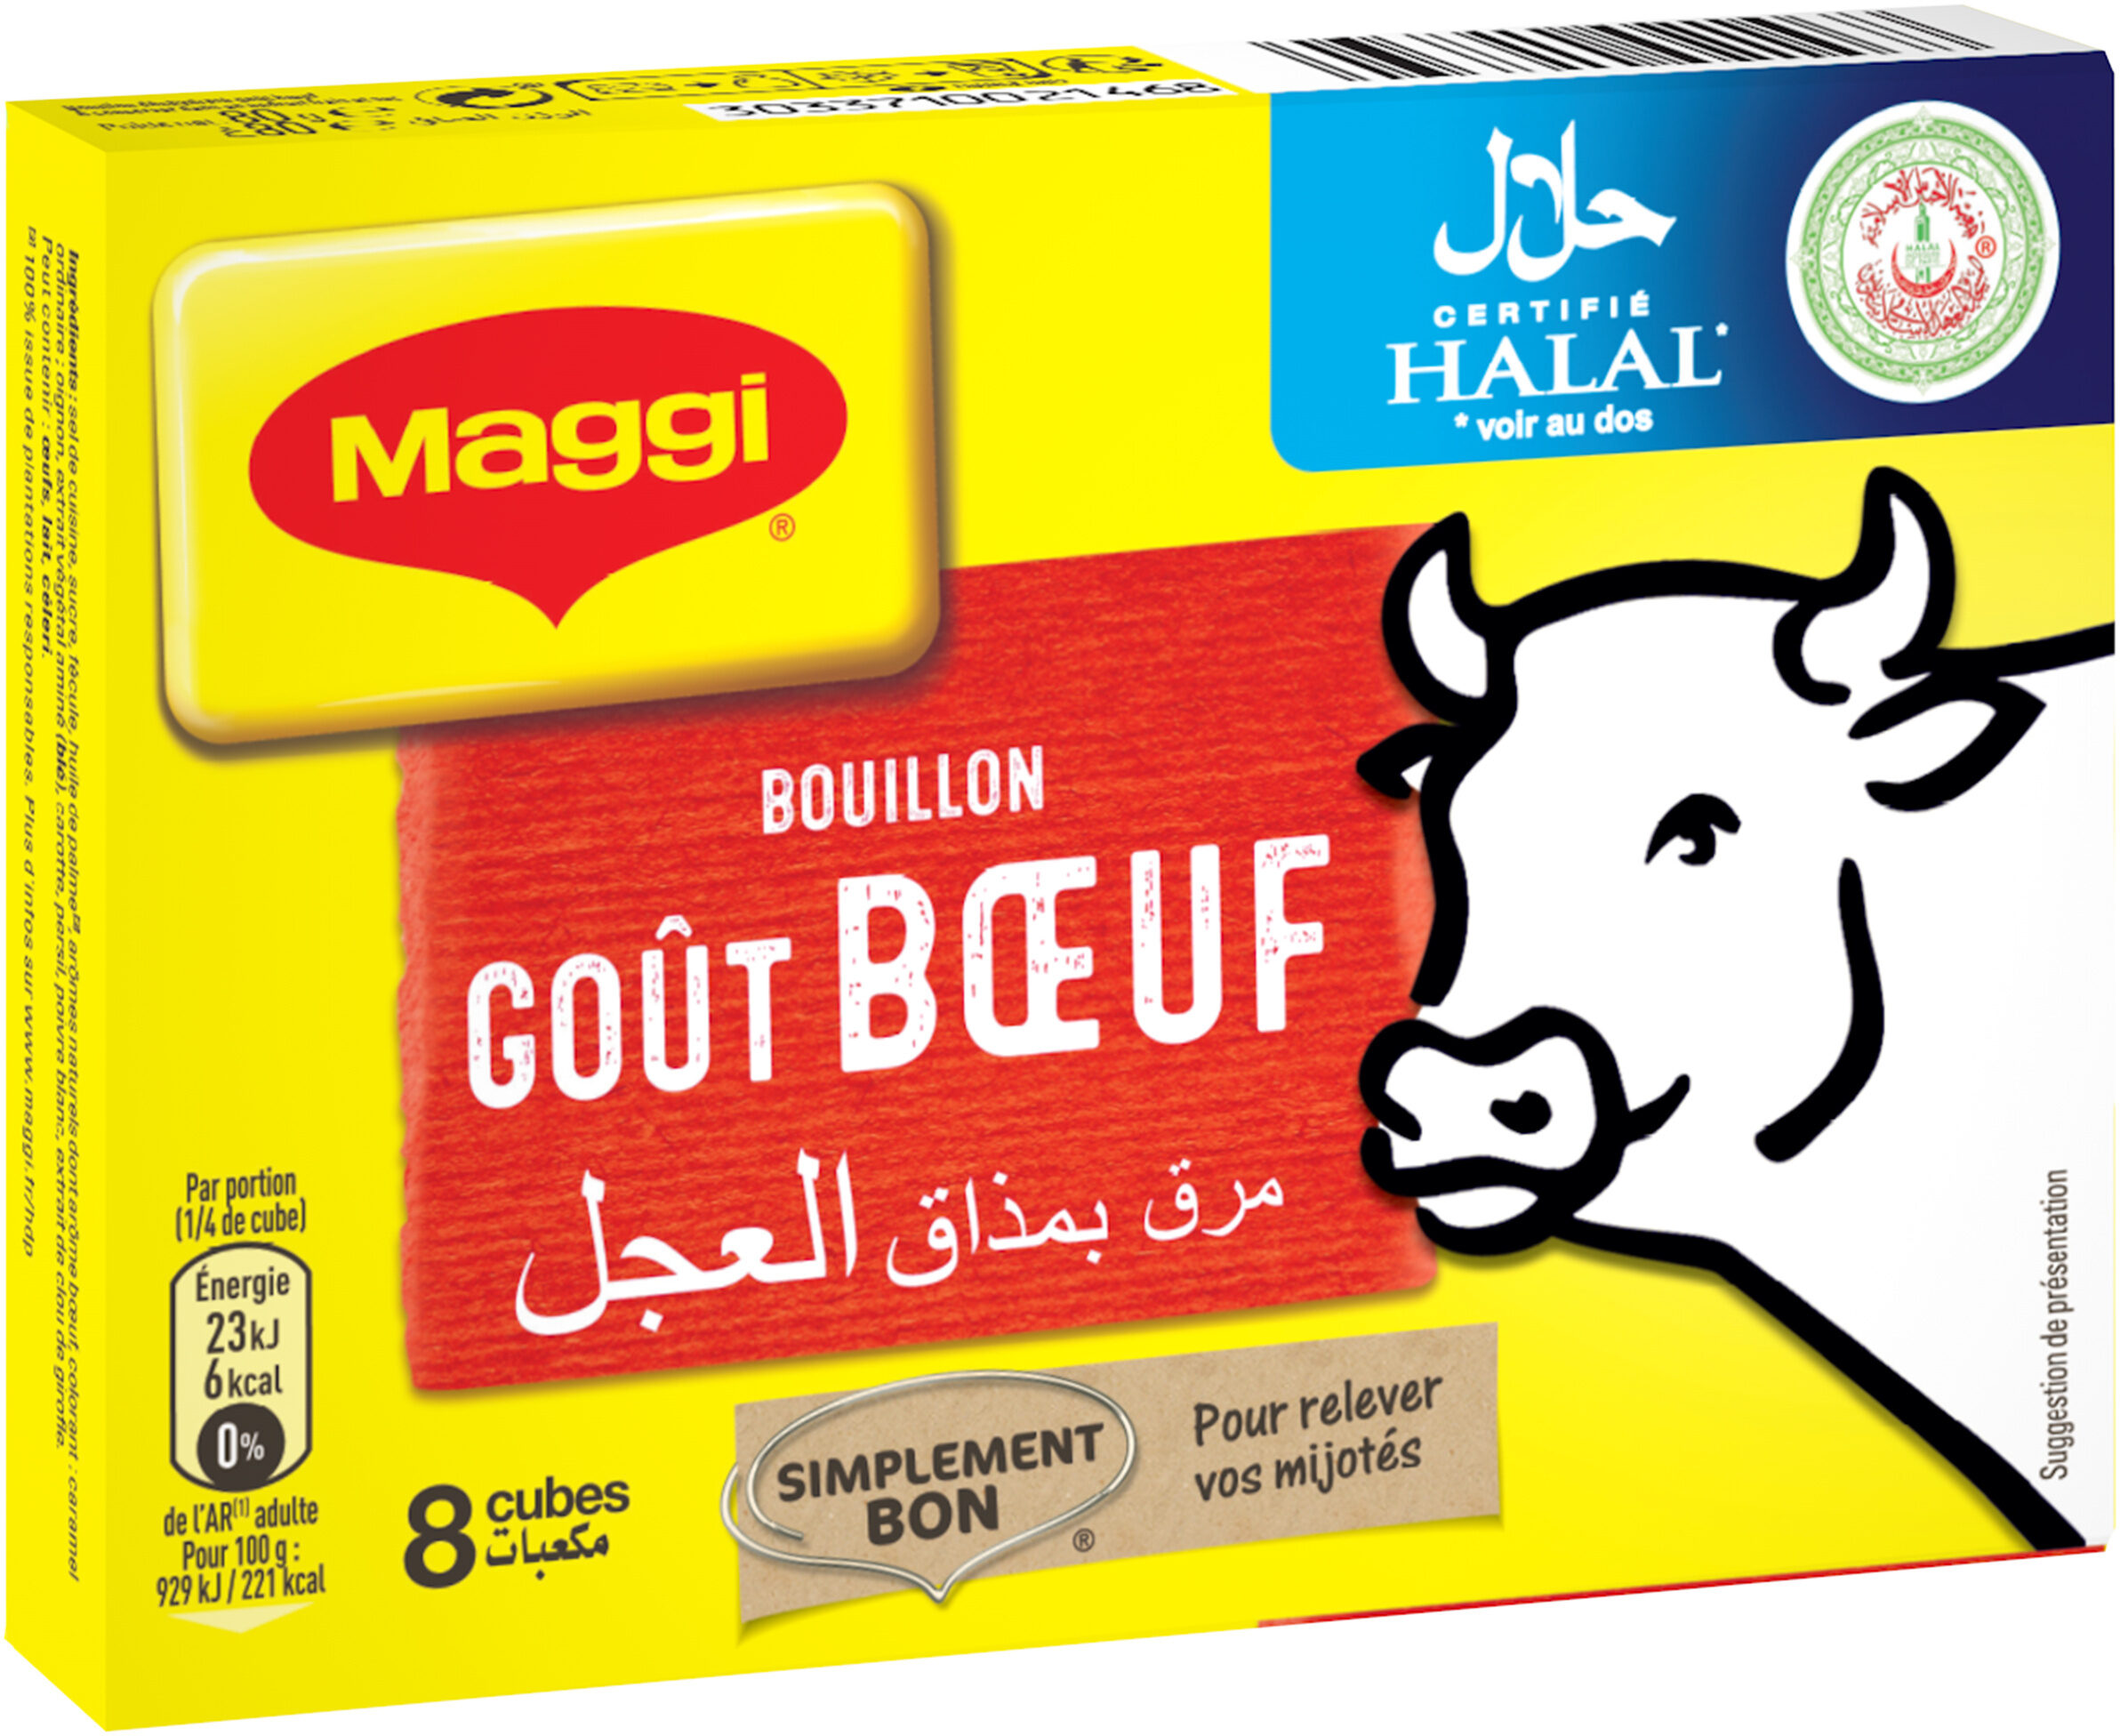 MAGGI Bouillon goût Bœuf Halal 8 tablettes, 80g - Produkt - fr